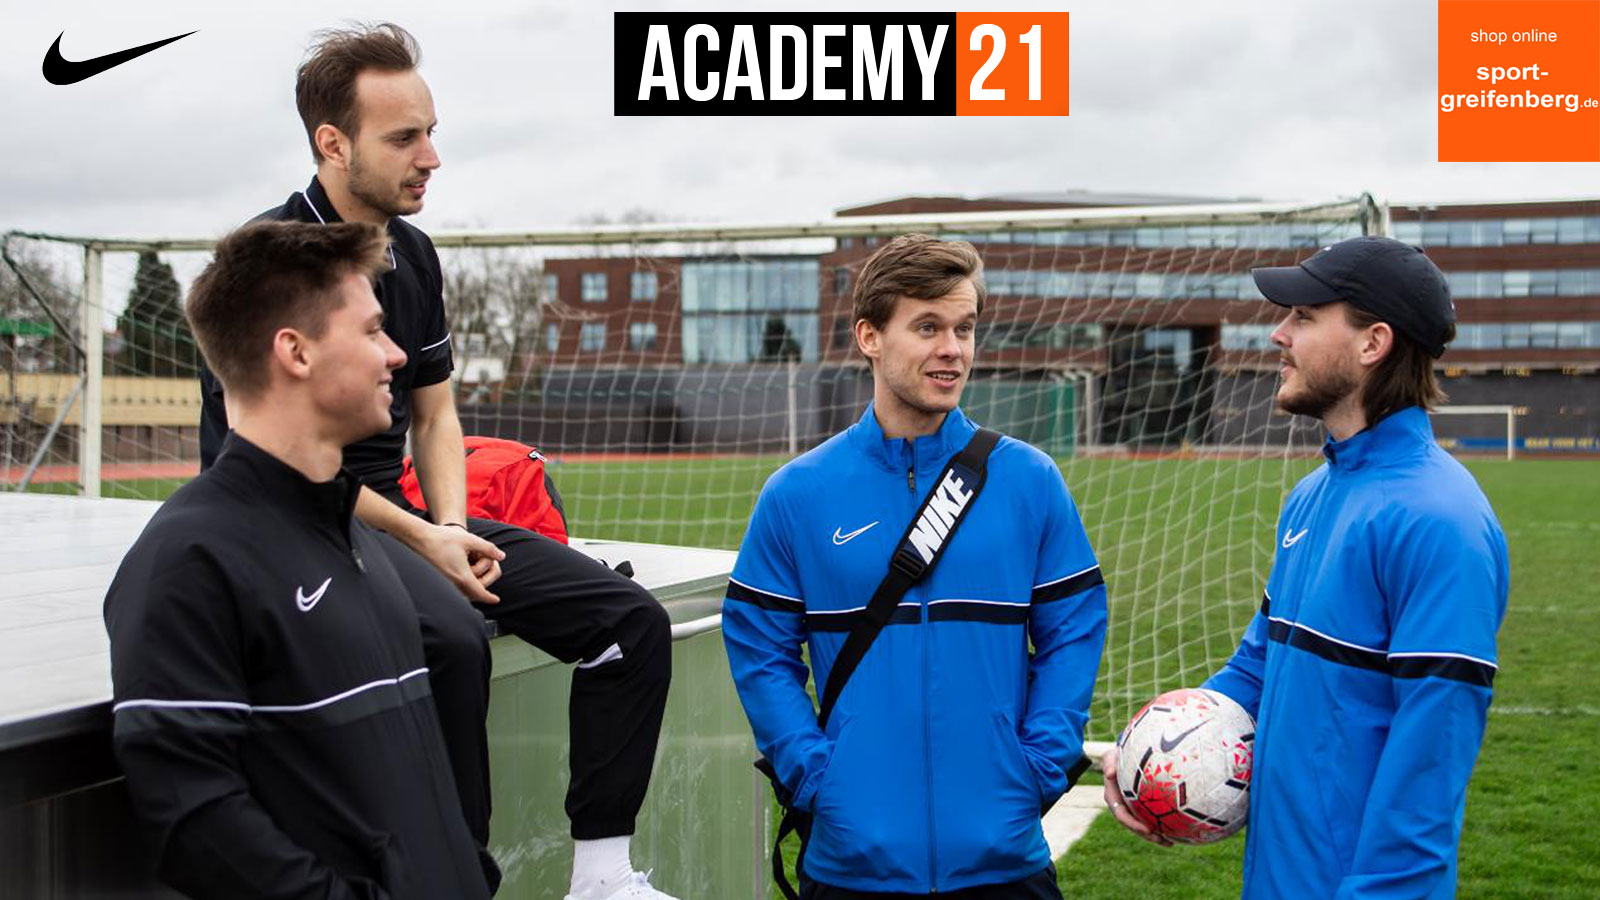 die Nike Academy 21 Sportbekleidung für 2021 und 2022